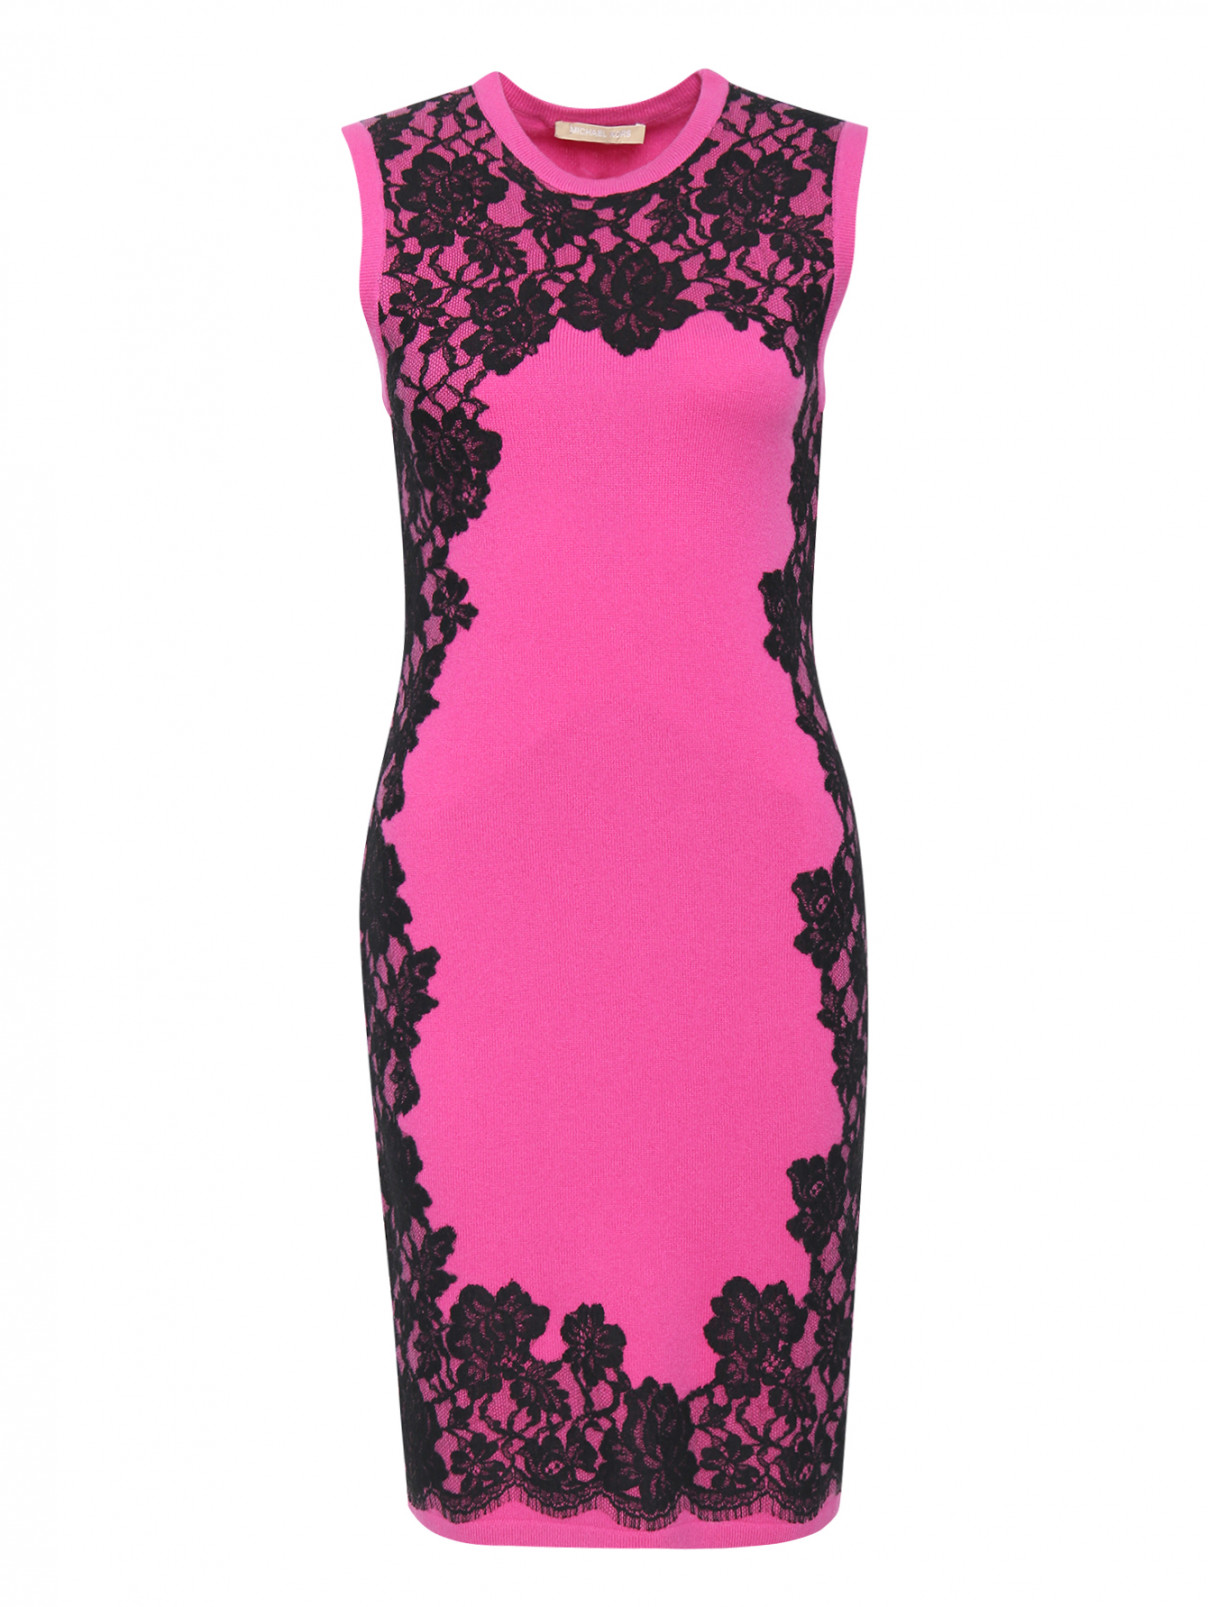 Платье из кашемира со вставками из кружева Michael Kors  –  Общий вид  – Цвет:  Розовый